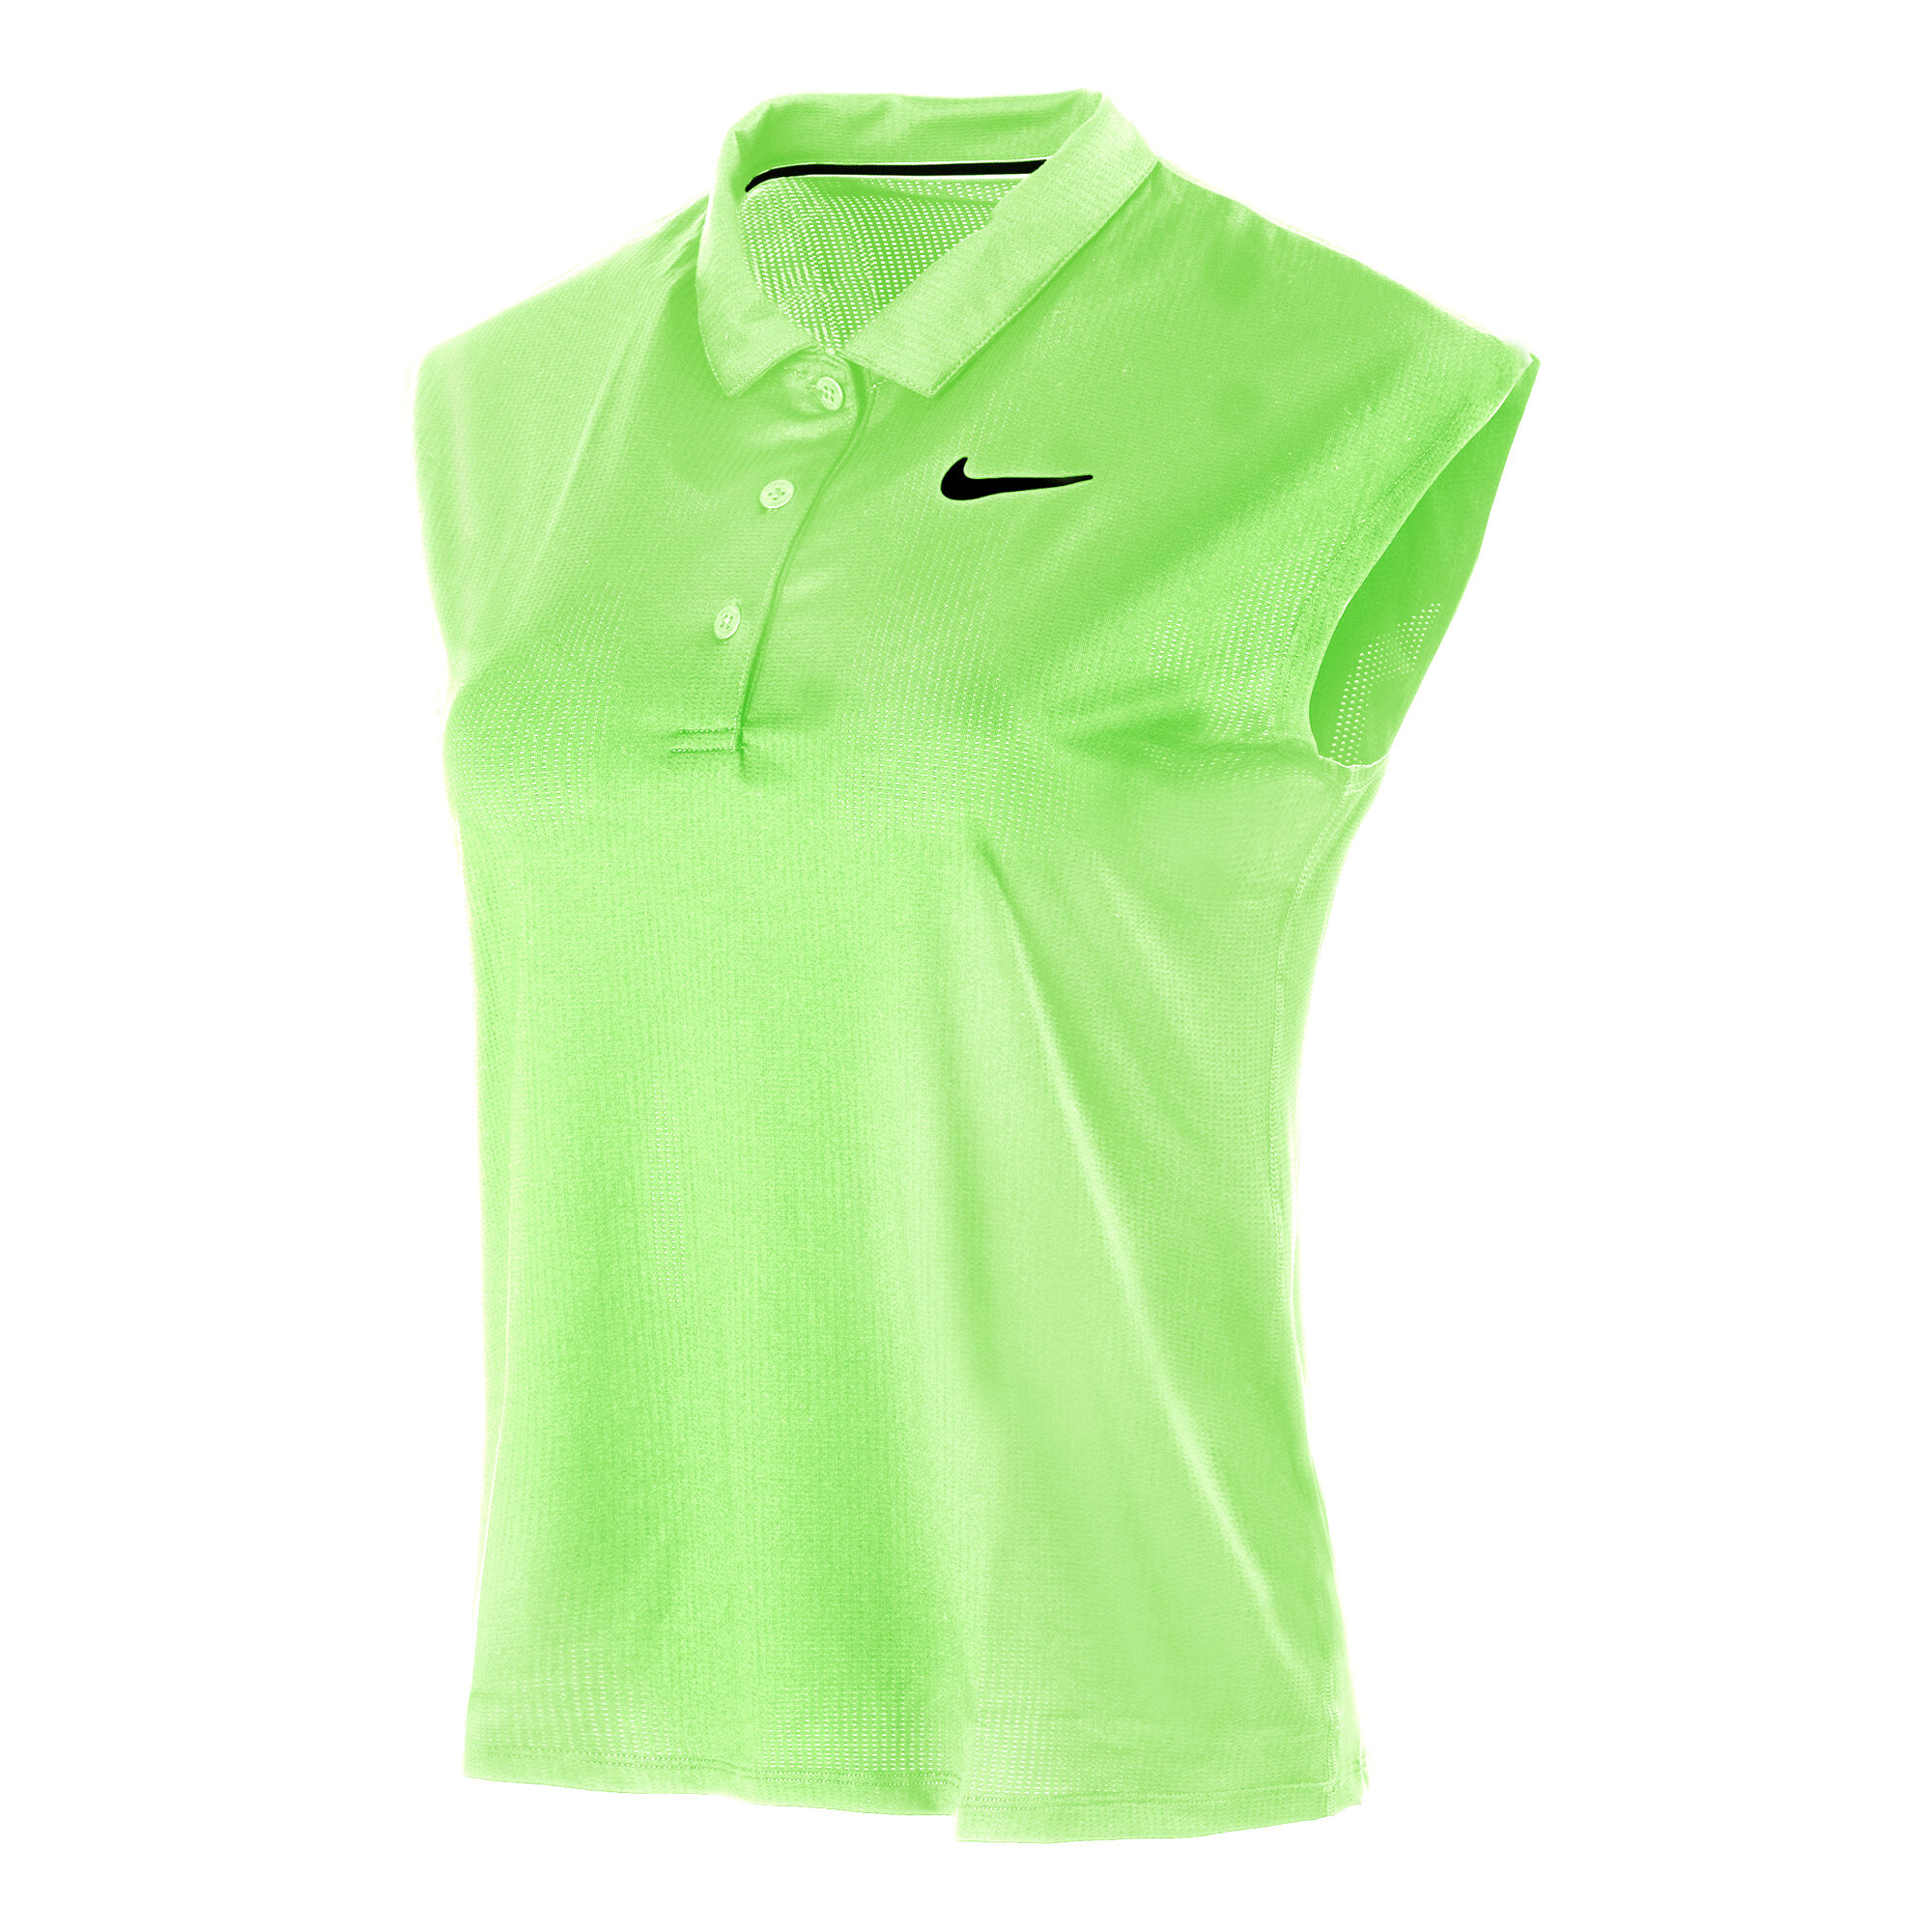 Opnieuw schieten getuige Robijn buy Nike Dri-Fit Victory Polo Women - Neon Green online | Tennis-Point